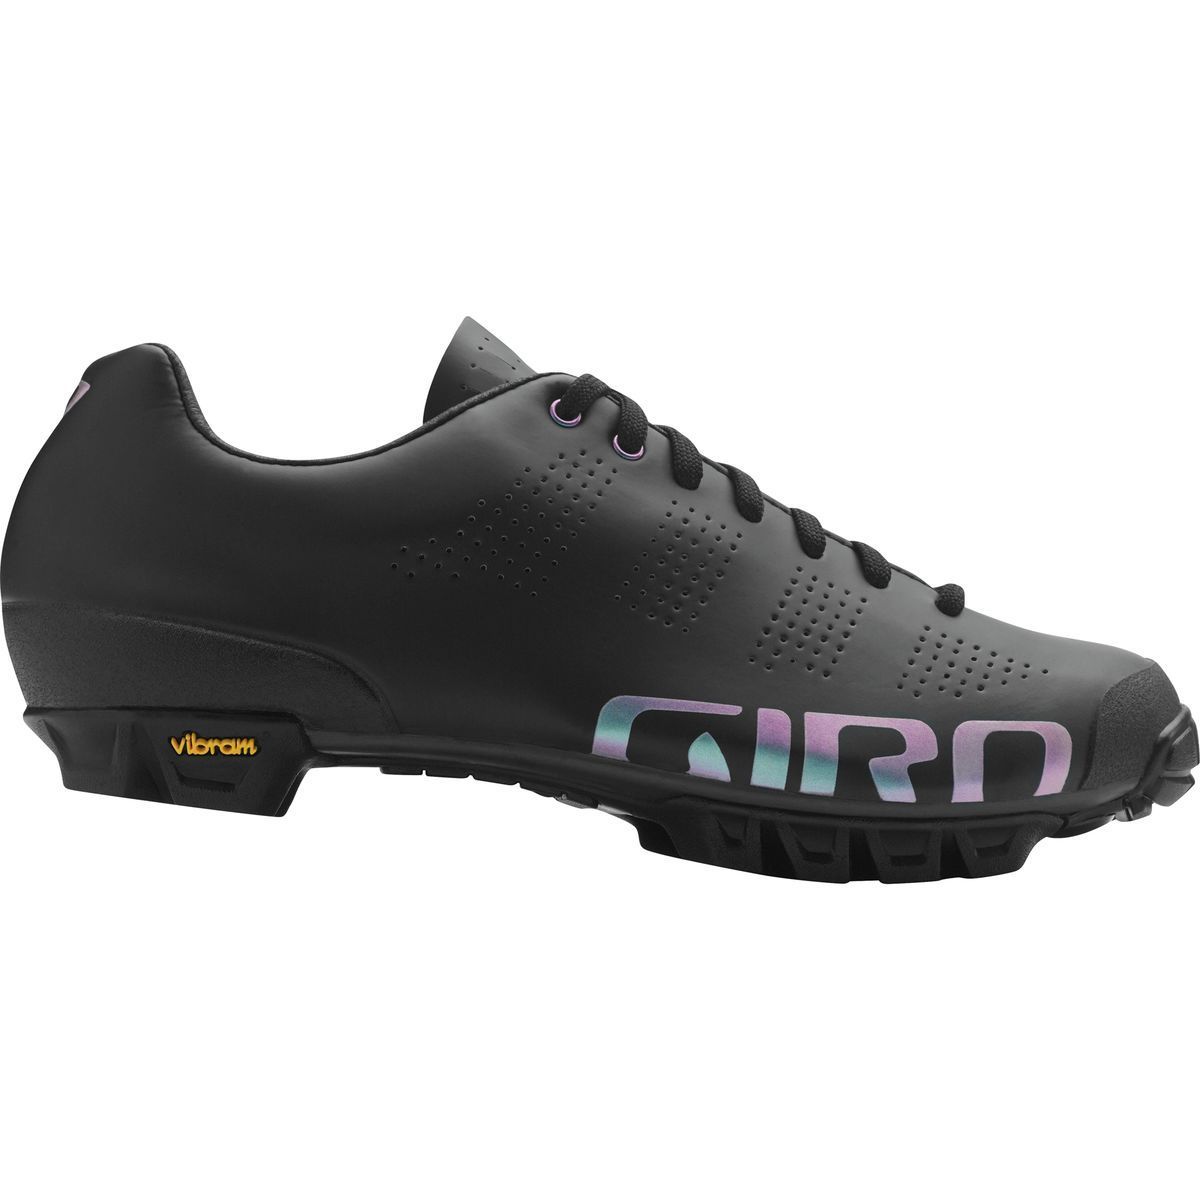 Giro Empire W VR90 Shoe Women's